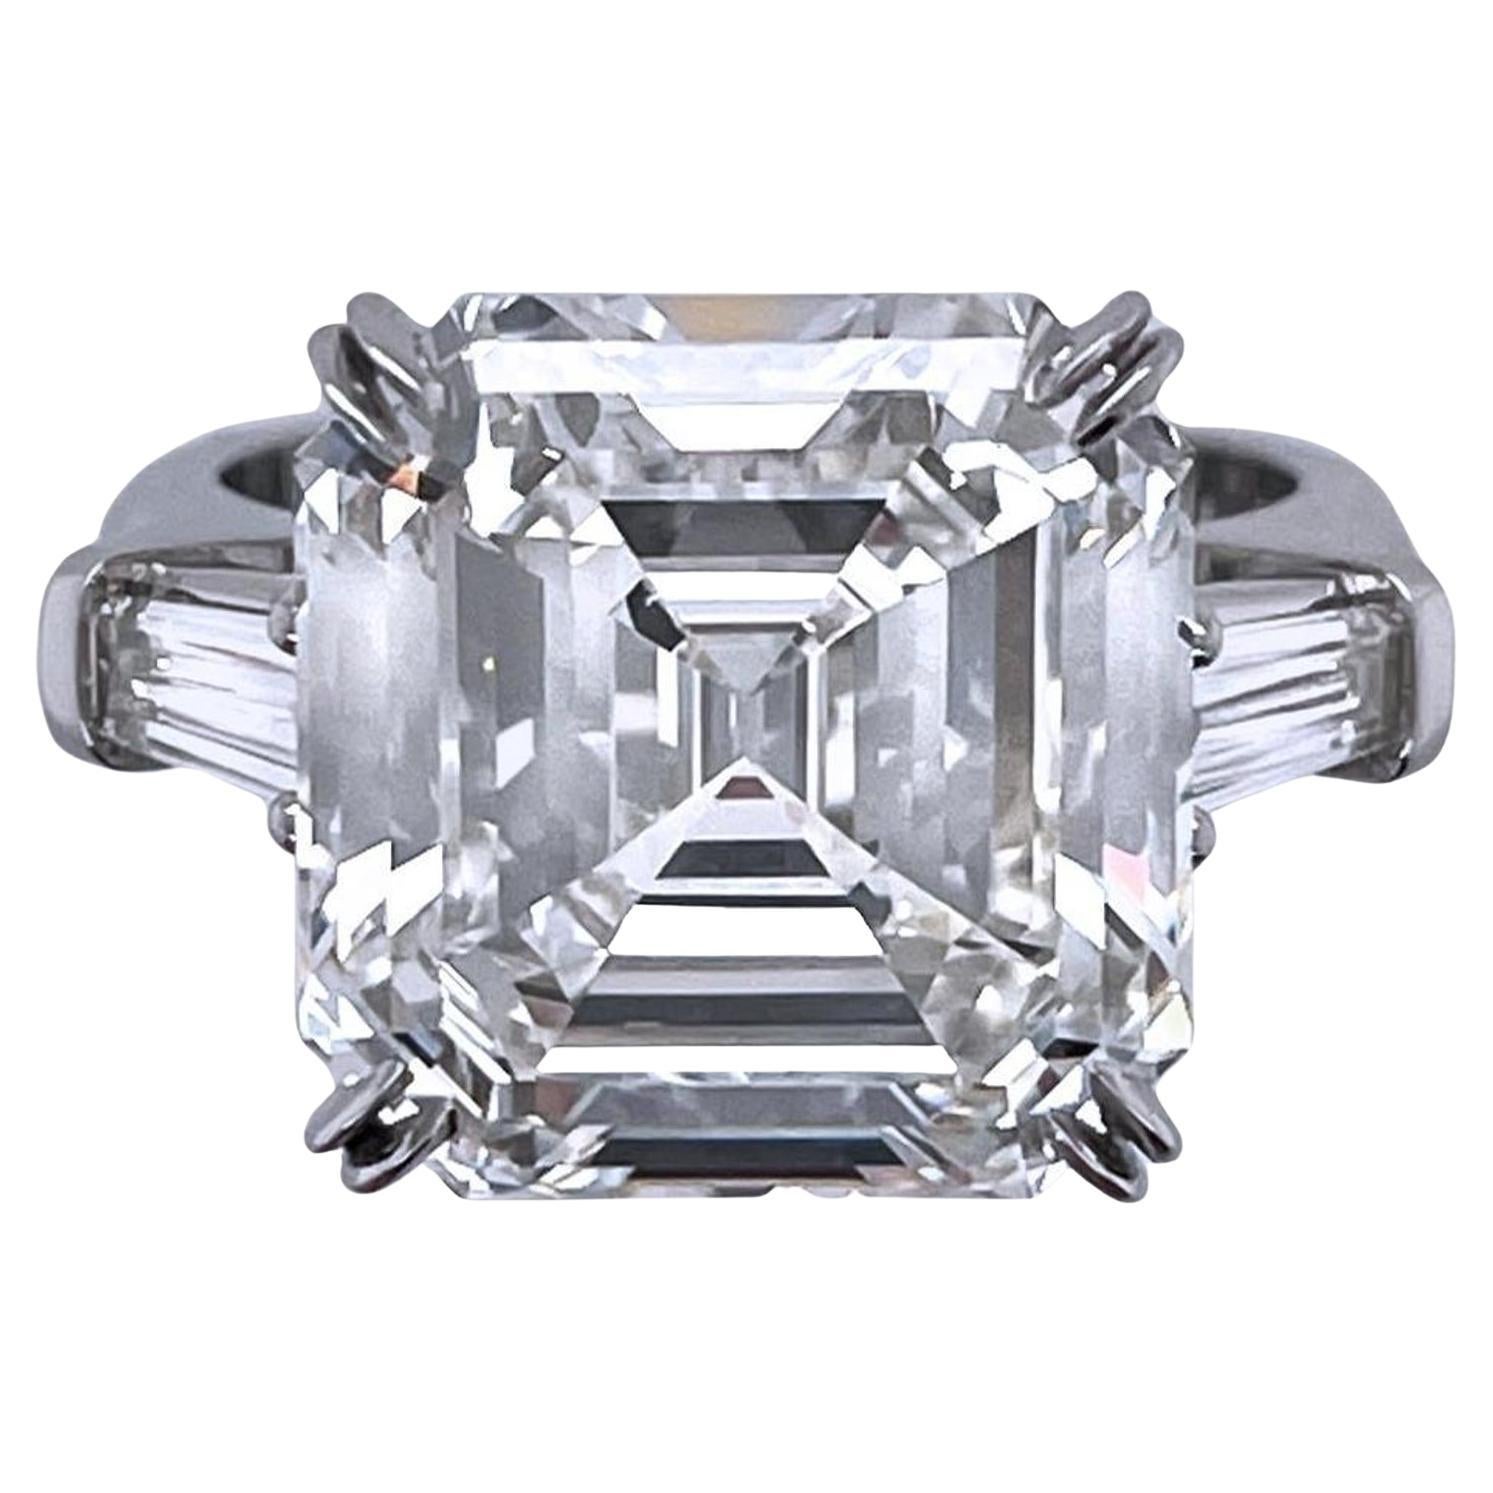 GIA Certified 22 Carat Diamond Emerald Cut Diamond For Sale